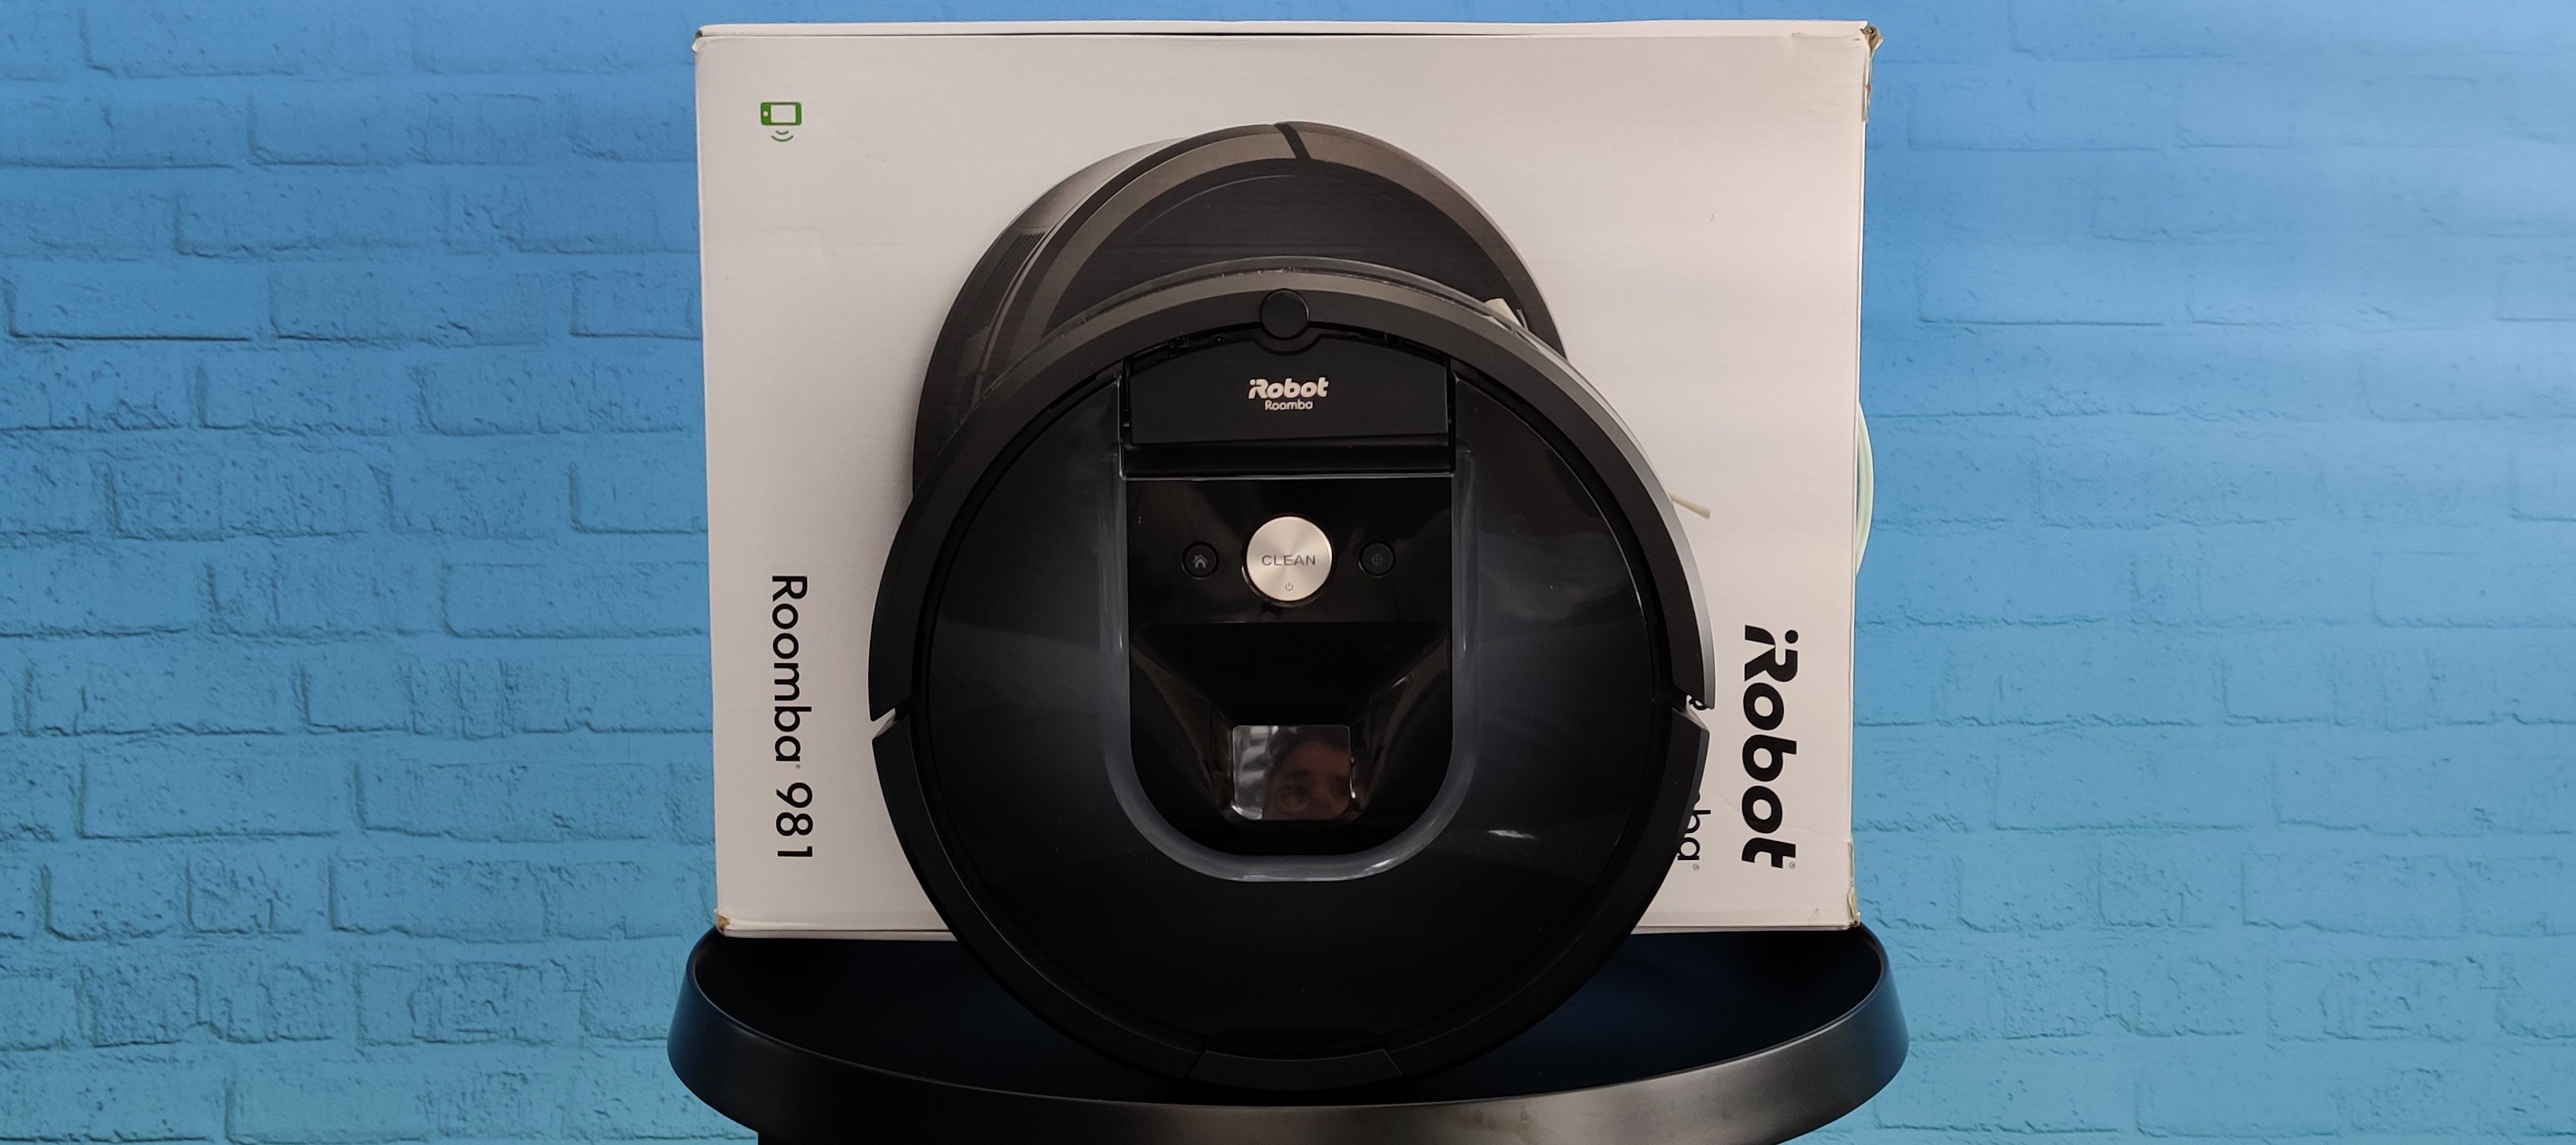 Testgerät iRobot Roomba - pflegt dein Zuhause!